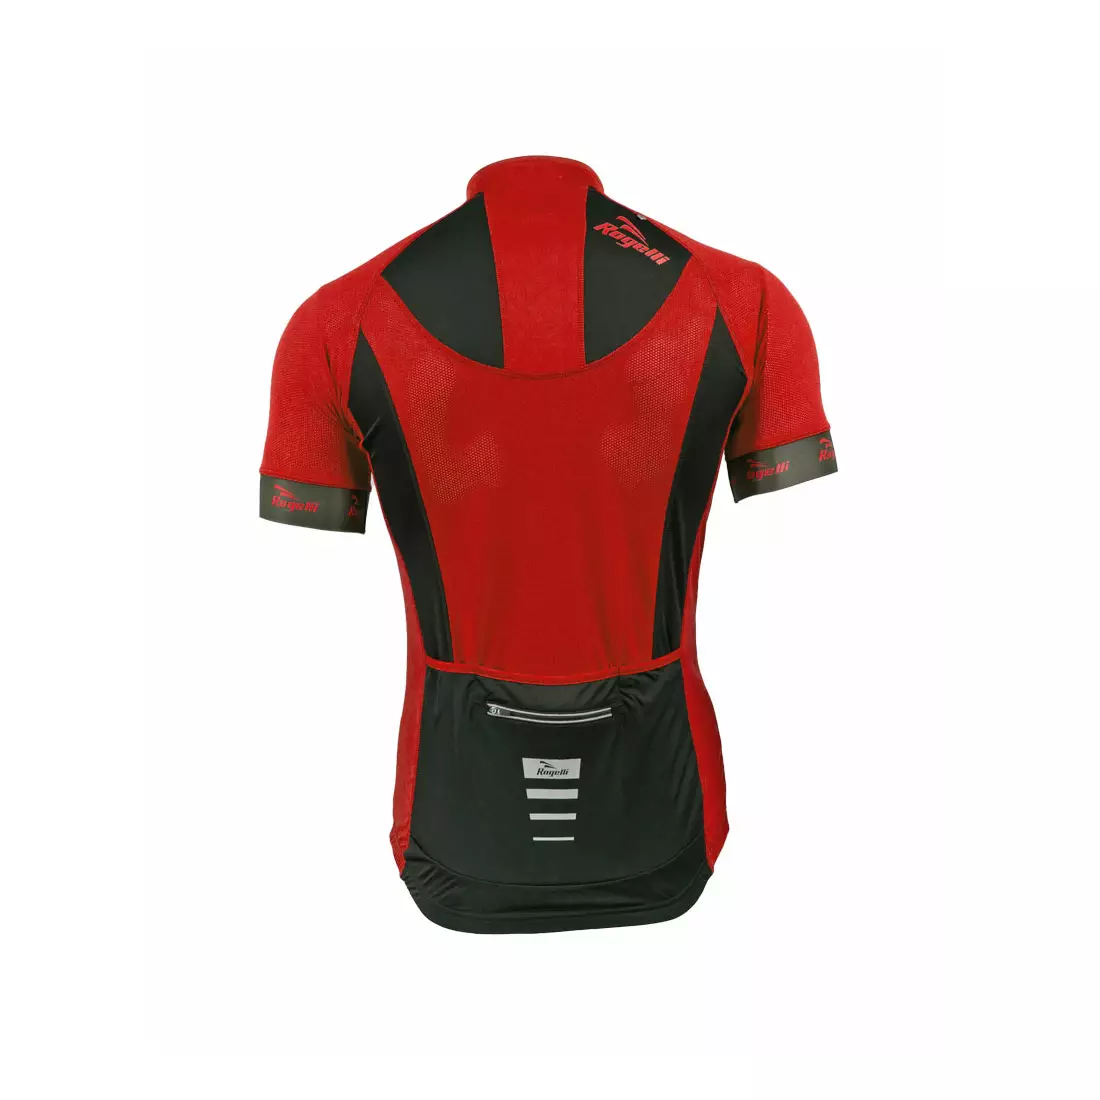 ROGELLI PRALI - pánský cyklistický dres, barva: černo-červená